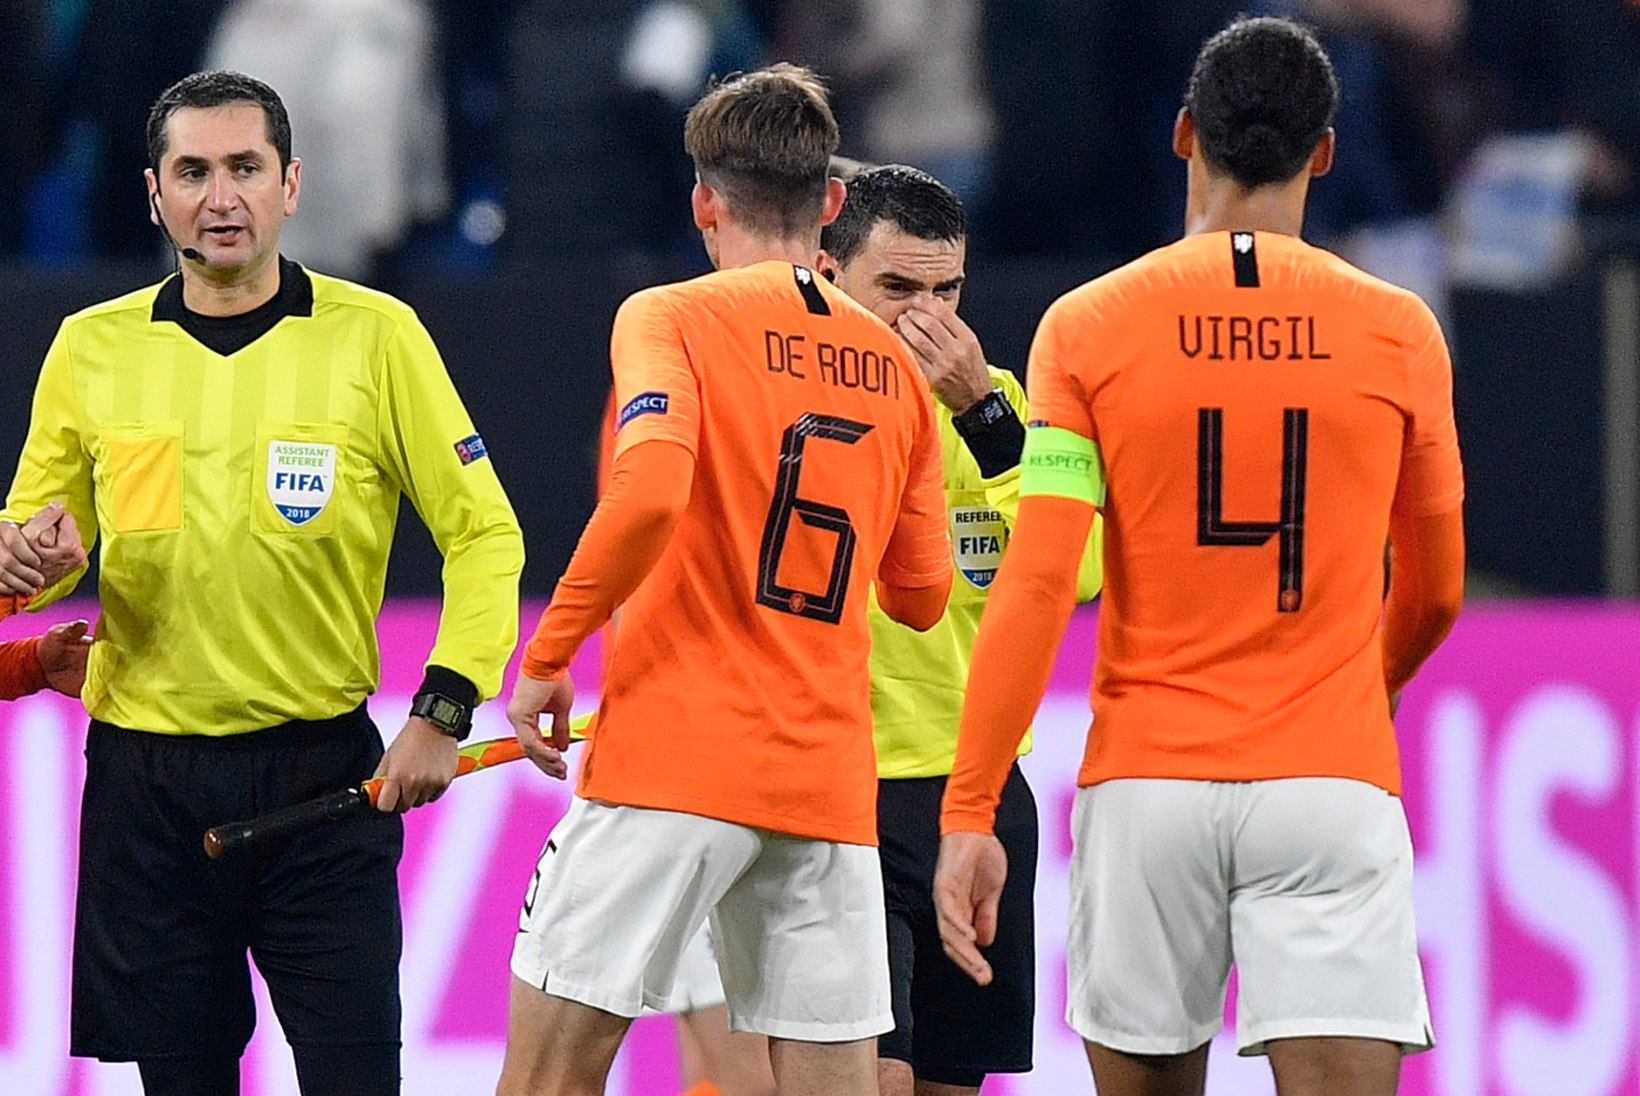 VIDEO | Hollandi jalgpallikoondise kapten lohutas pärast kohtumist pisaraid valanud peakohtunikku